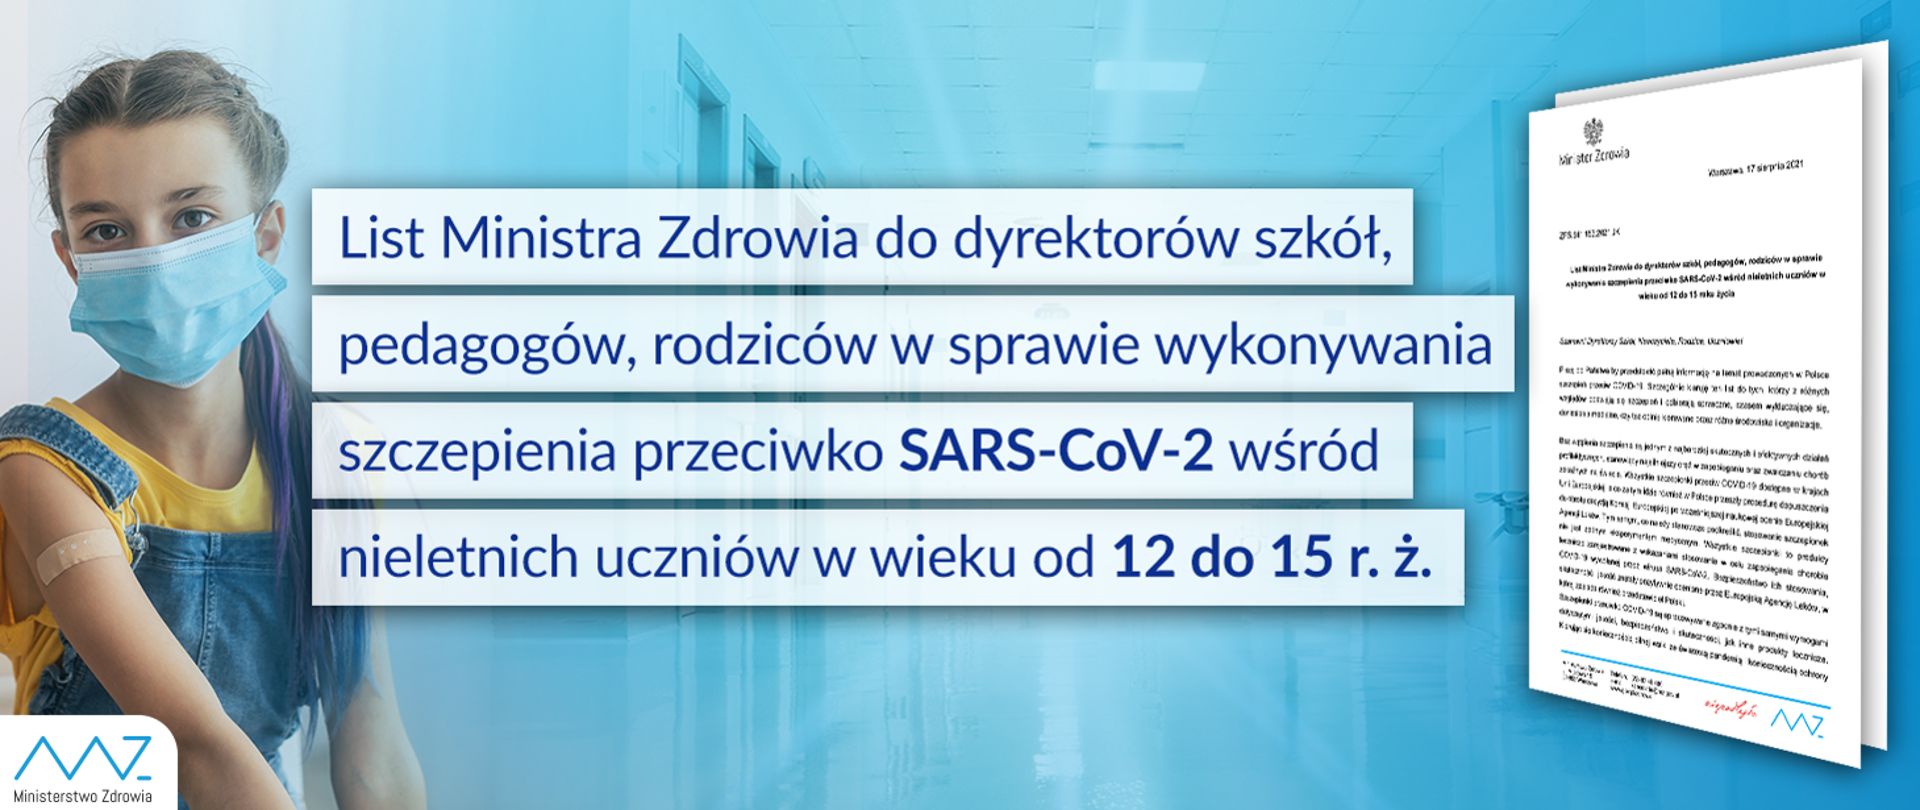 List Ministra Zdrowia do dyrektorów szkół, pedagogów, rodziców w sprawie wykonywania szczepienia przeciwko SARS-CoV-2 wśród nieletnich uczniów w wieku od 12 do 15 r. ż.